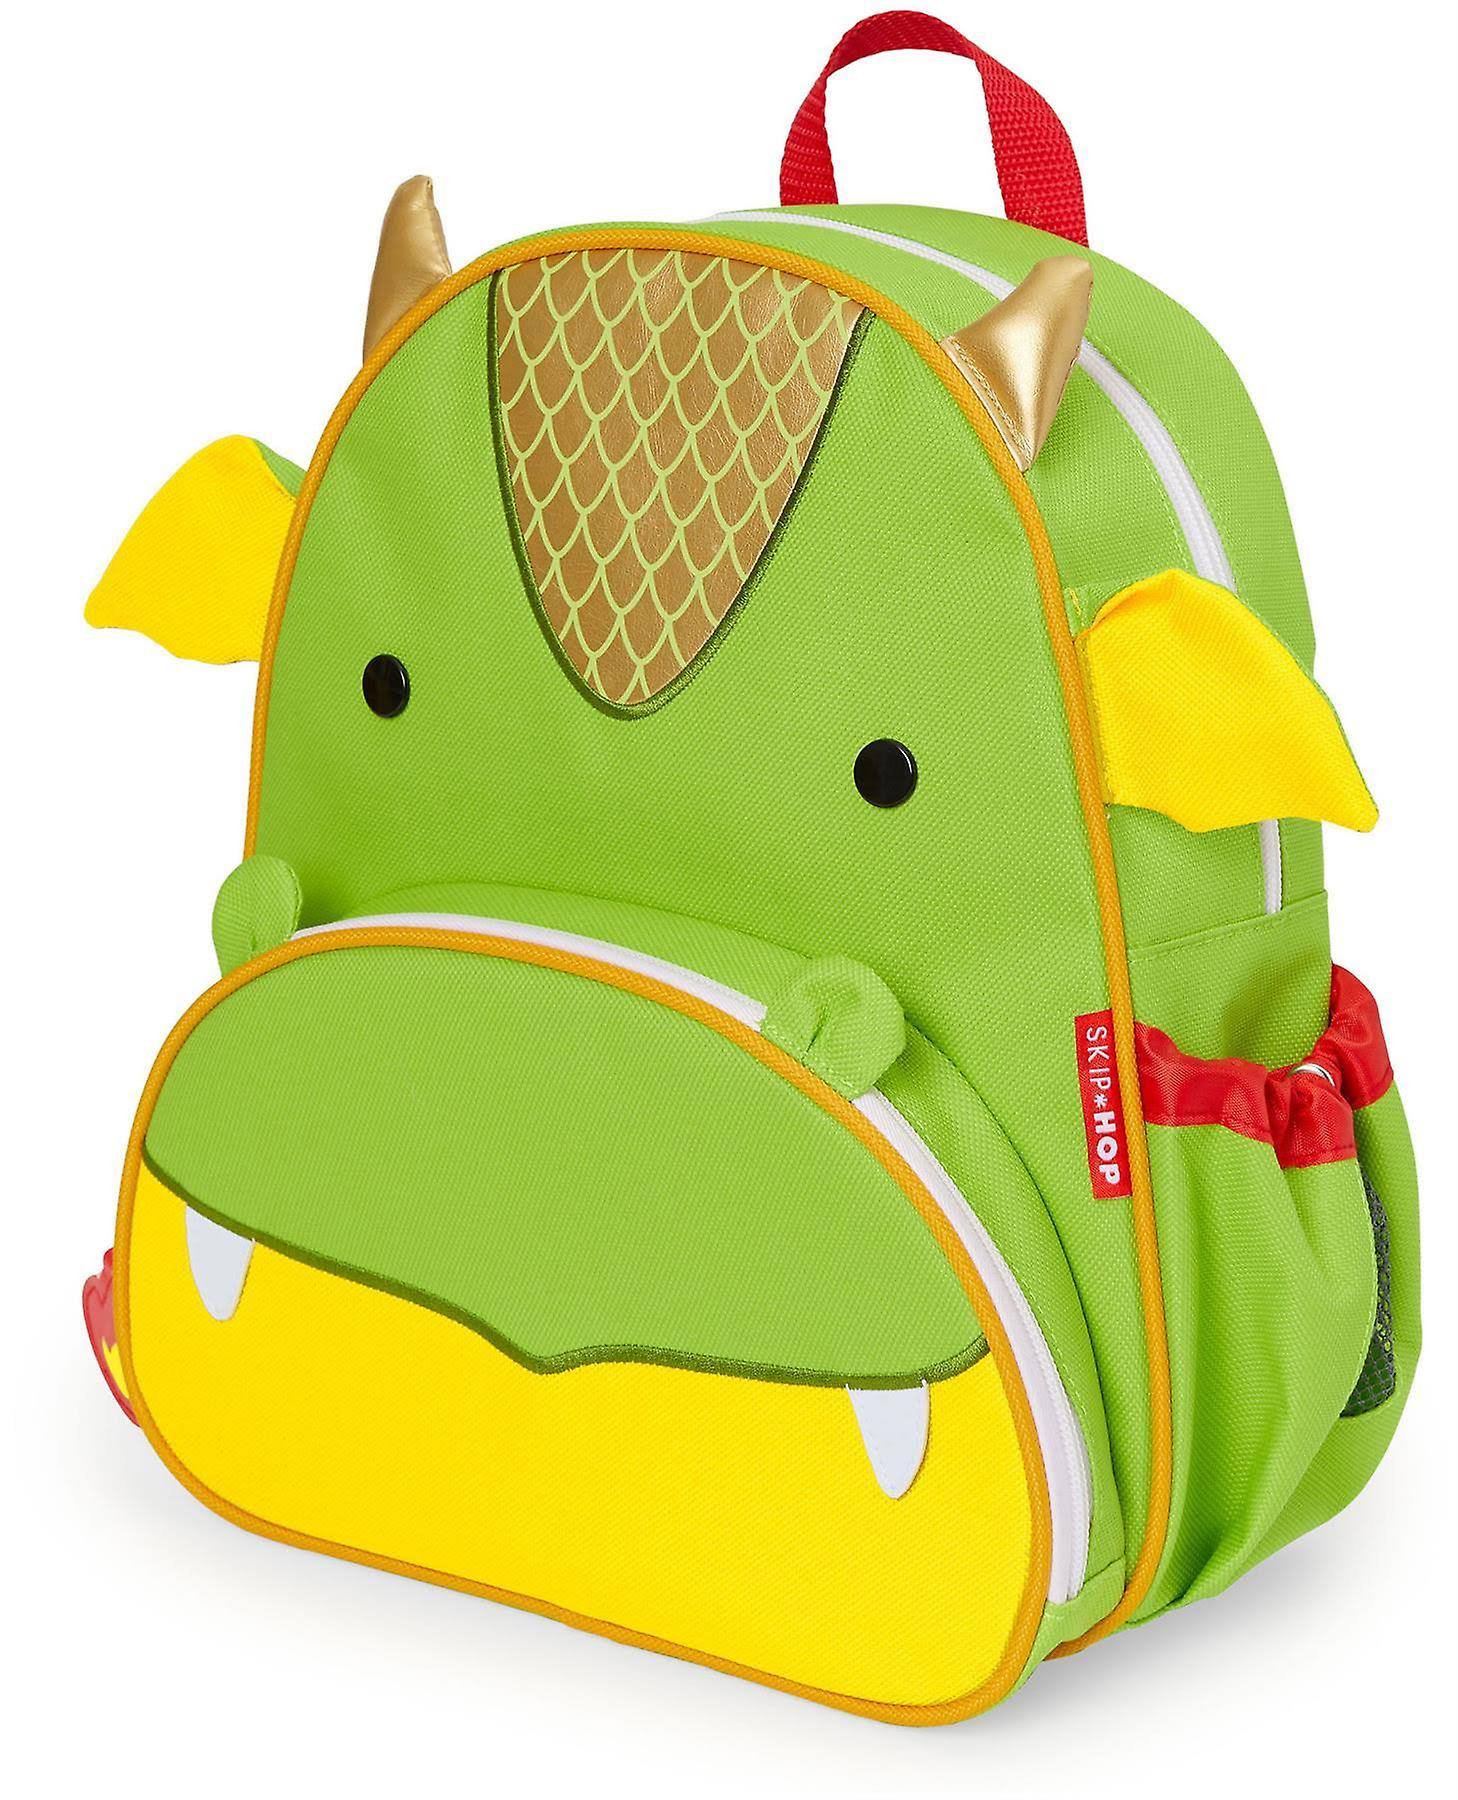 Skip Hop - Zoo Backpack, Dragon